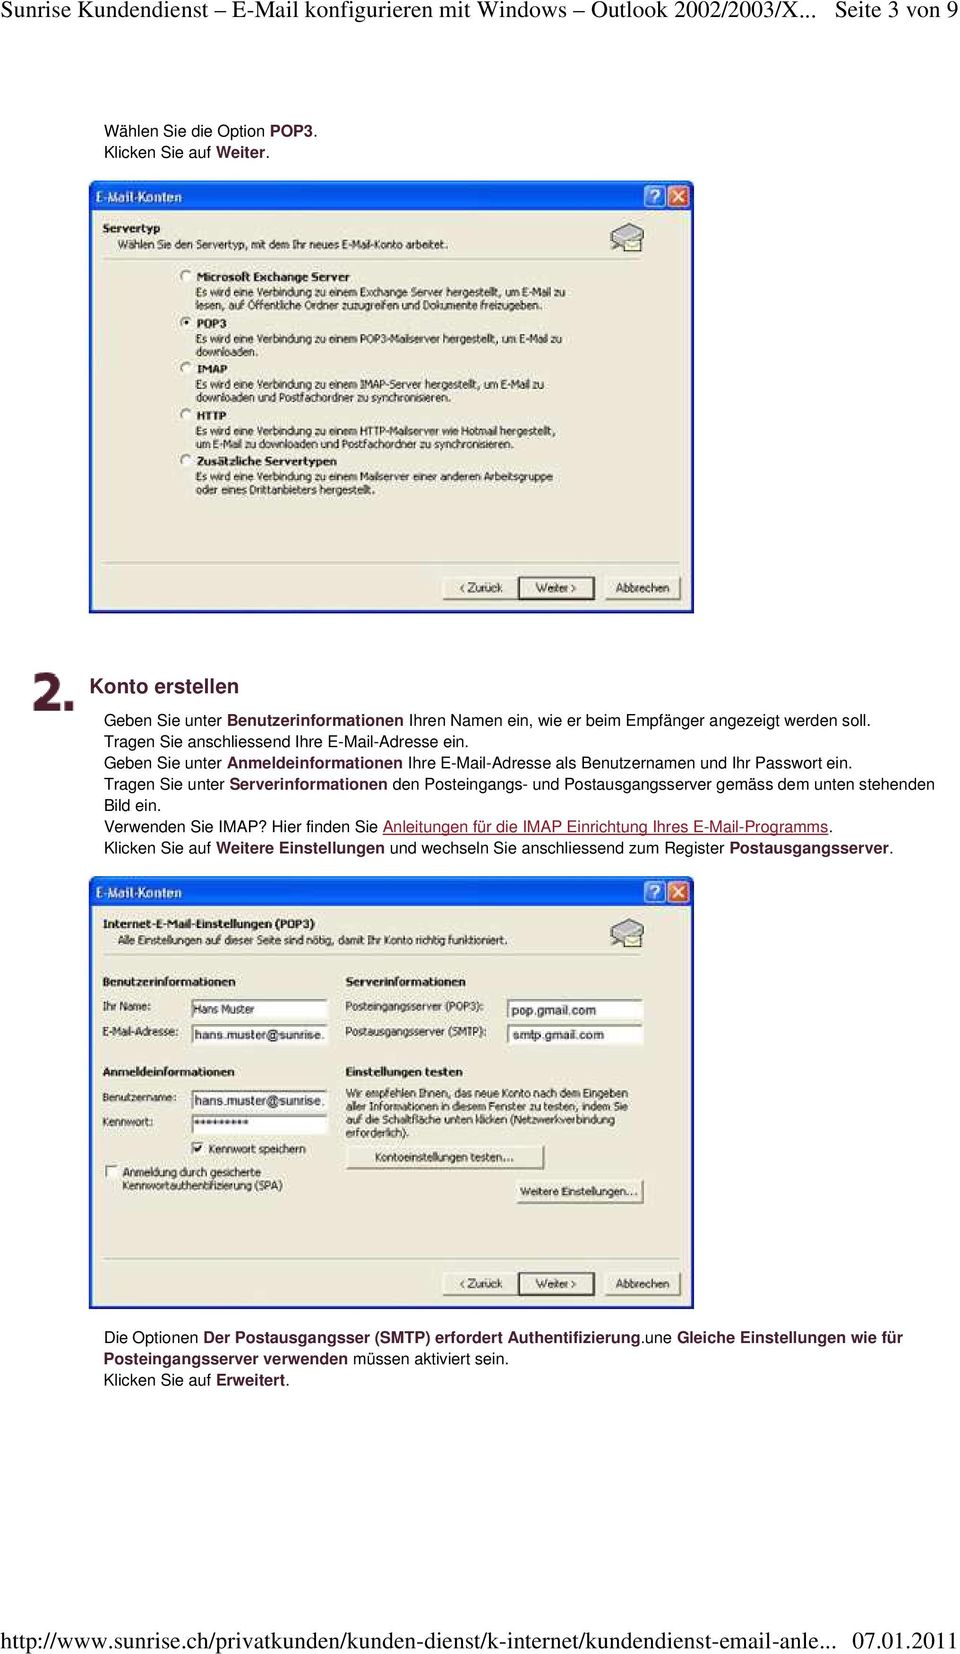 Tragen Sie unter Serverinformationen den Posteingangs- und Postausgangsserver gemäss dem unten stehenden Bild ein. Verwenden Sie IMAP?